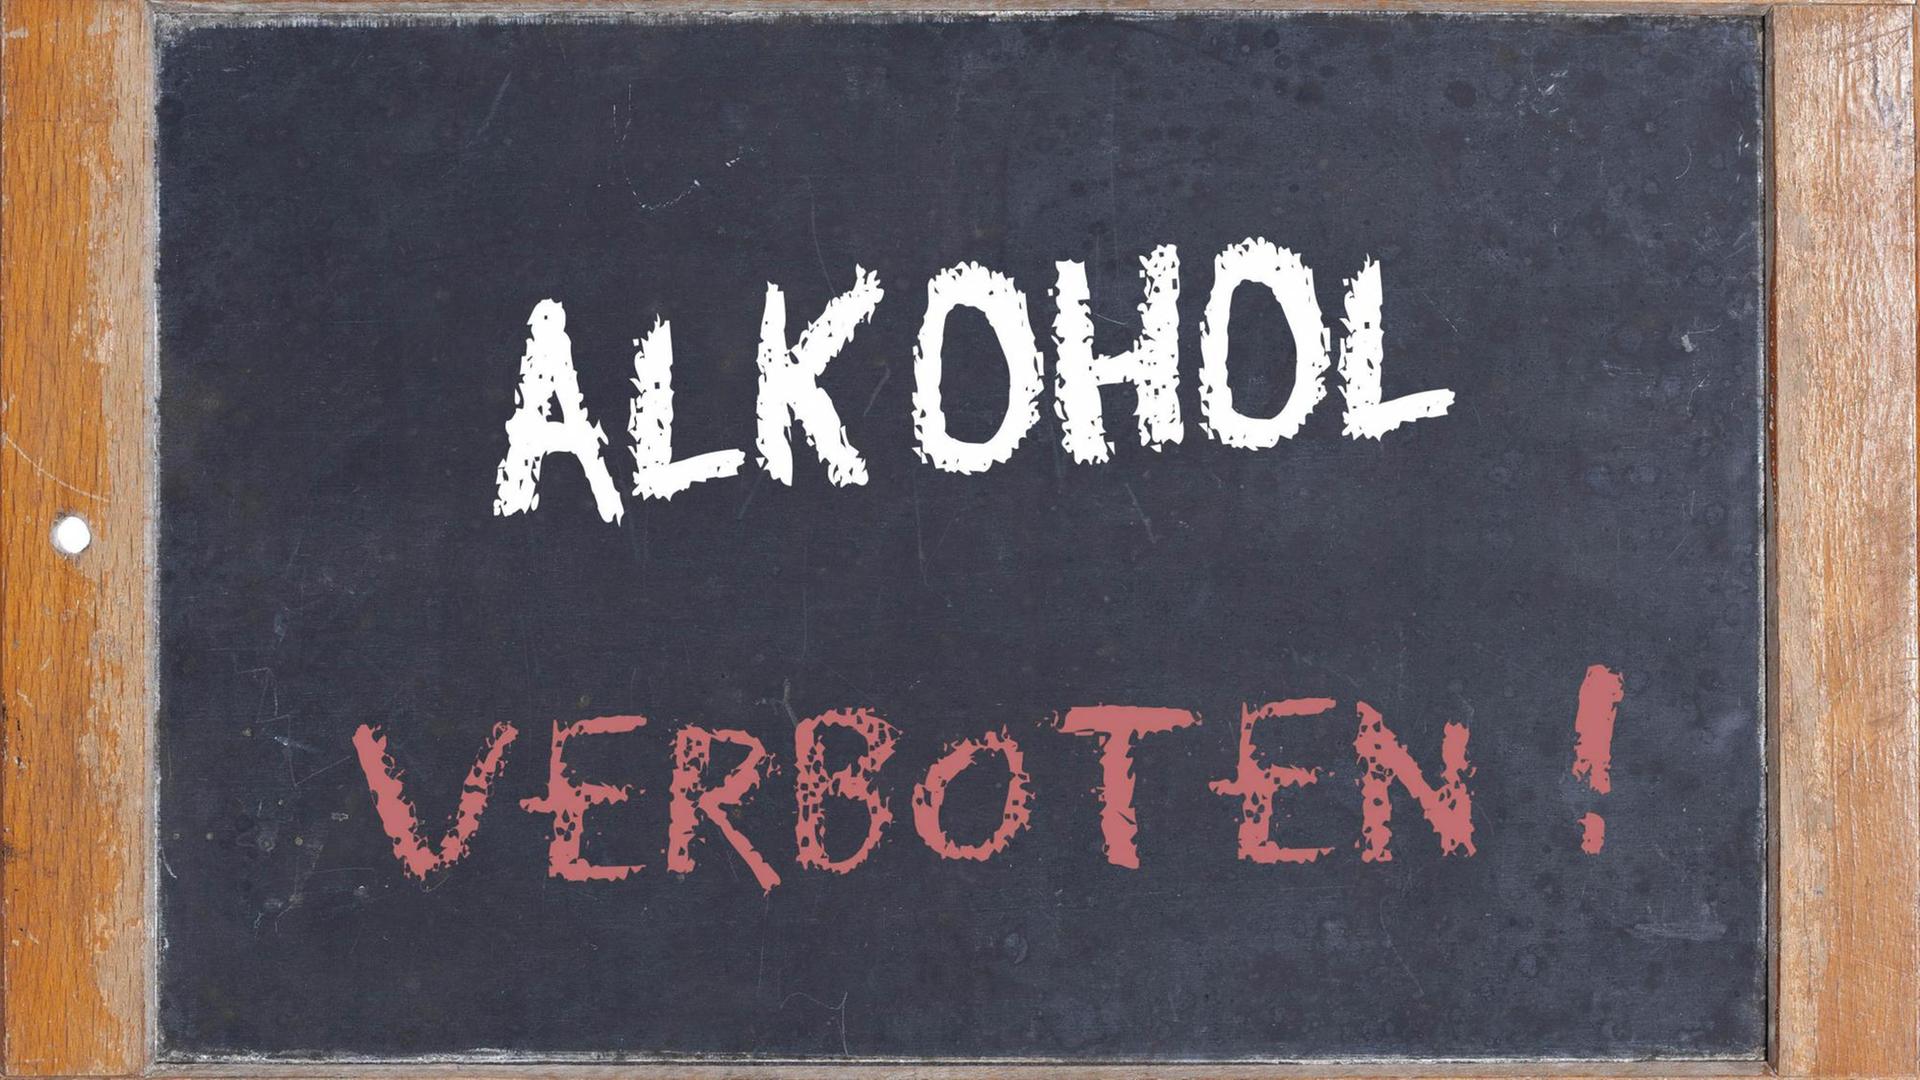 Alte Schultafel mit Aufschrift "Alkohol verboten!"